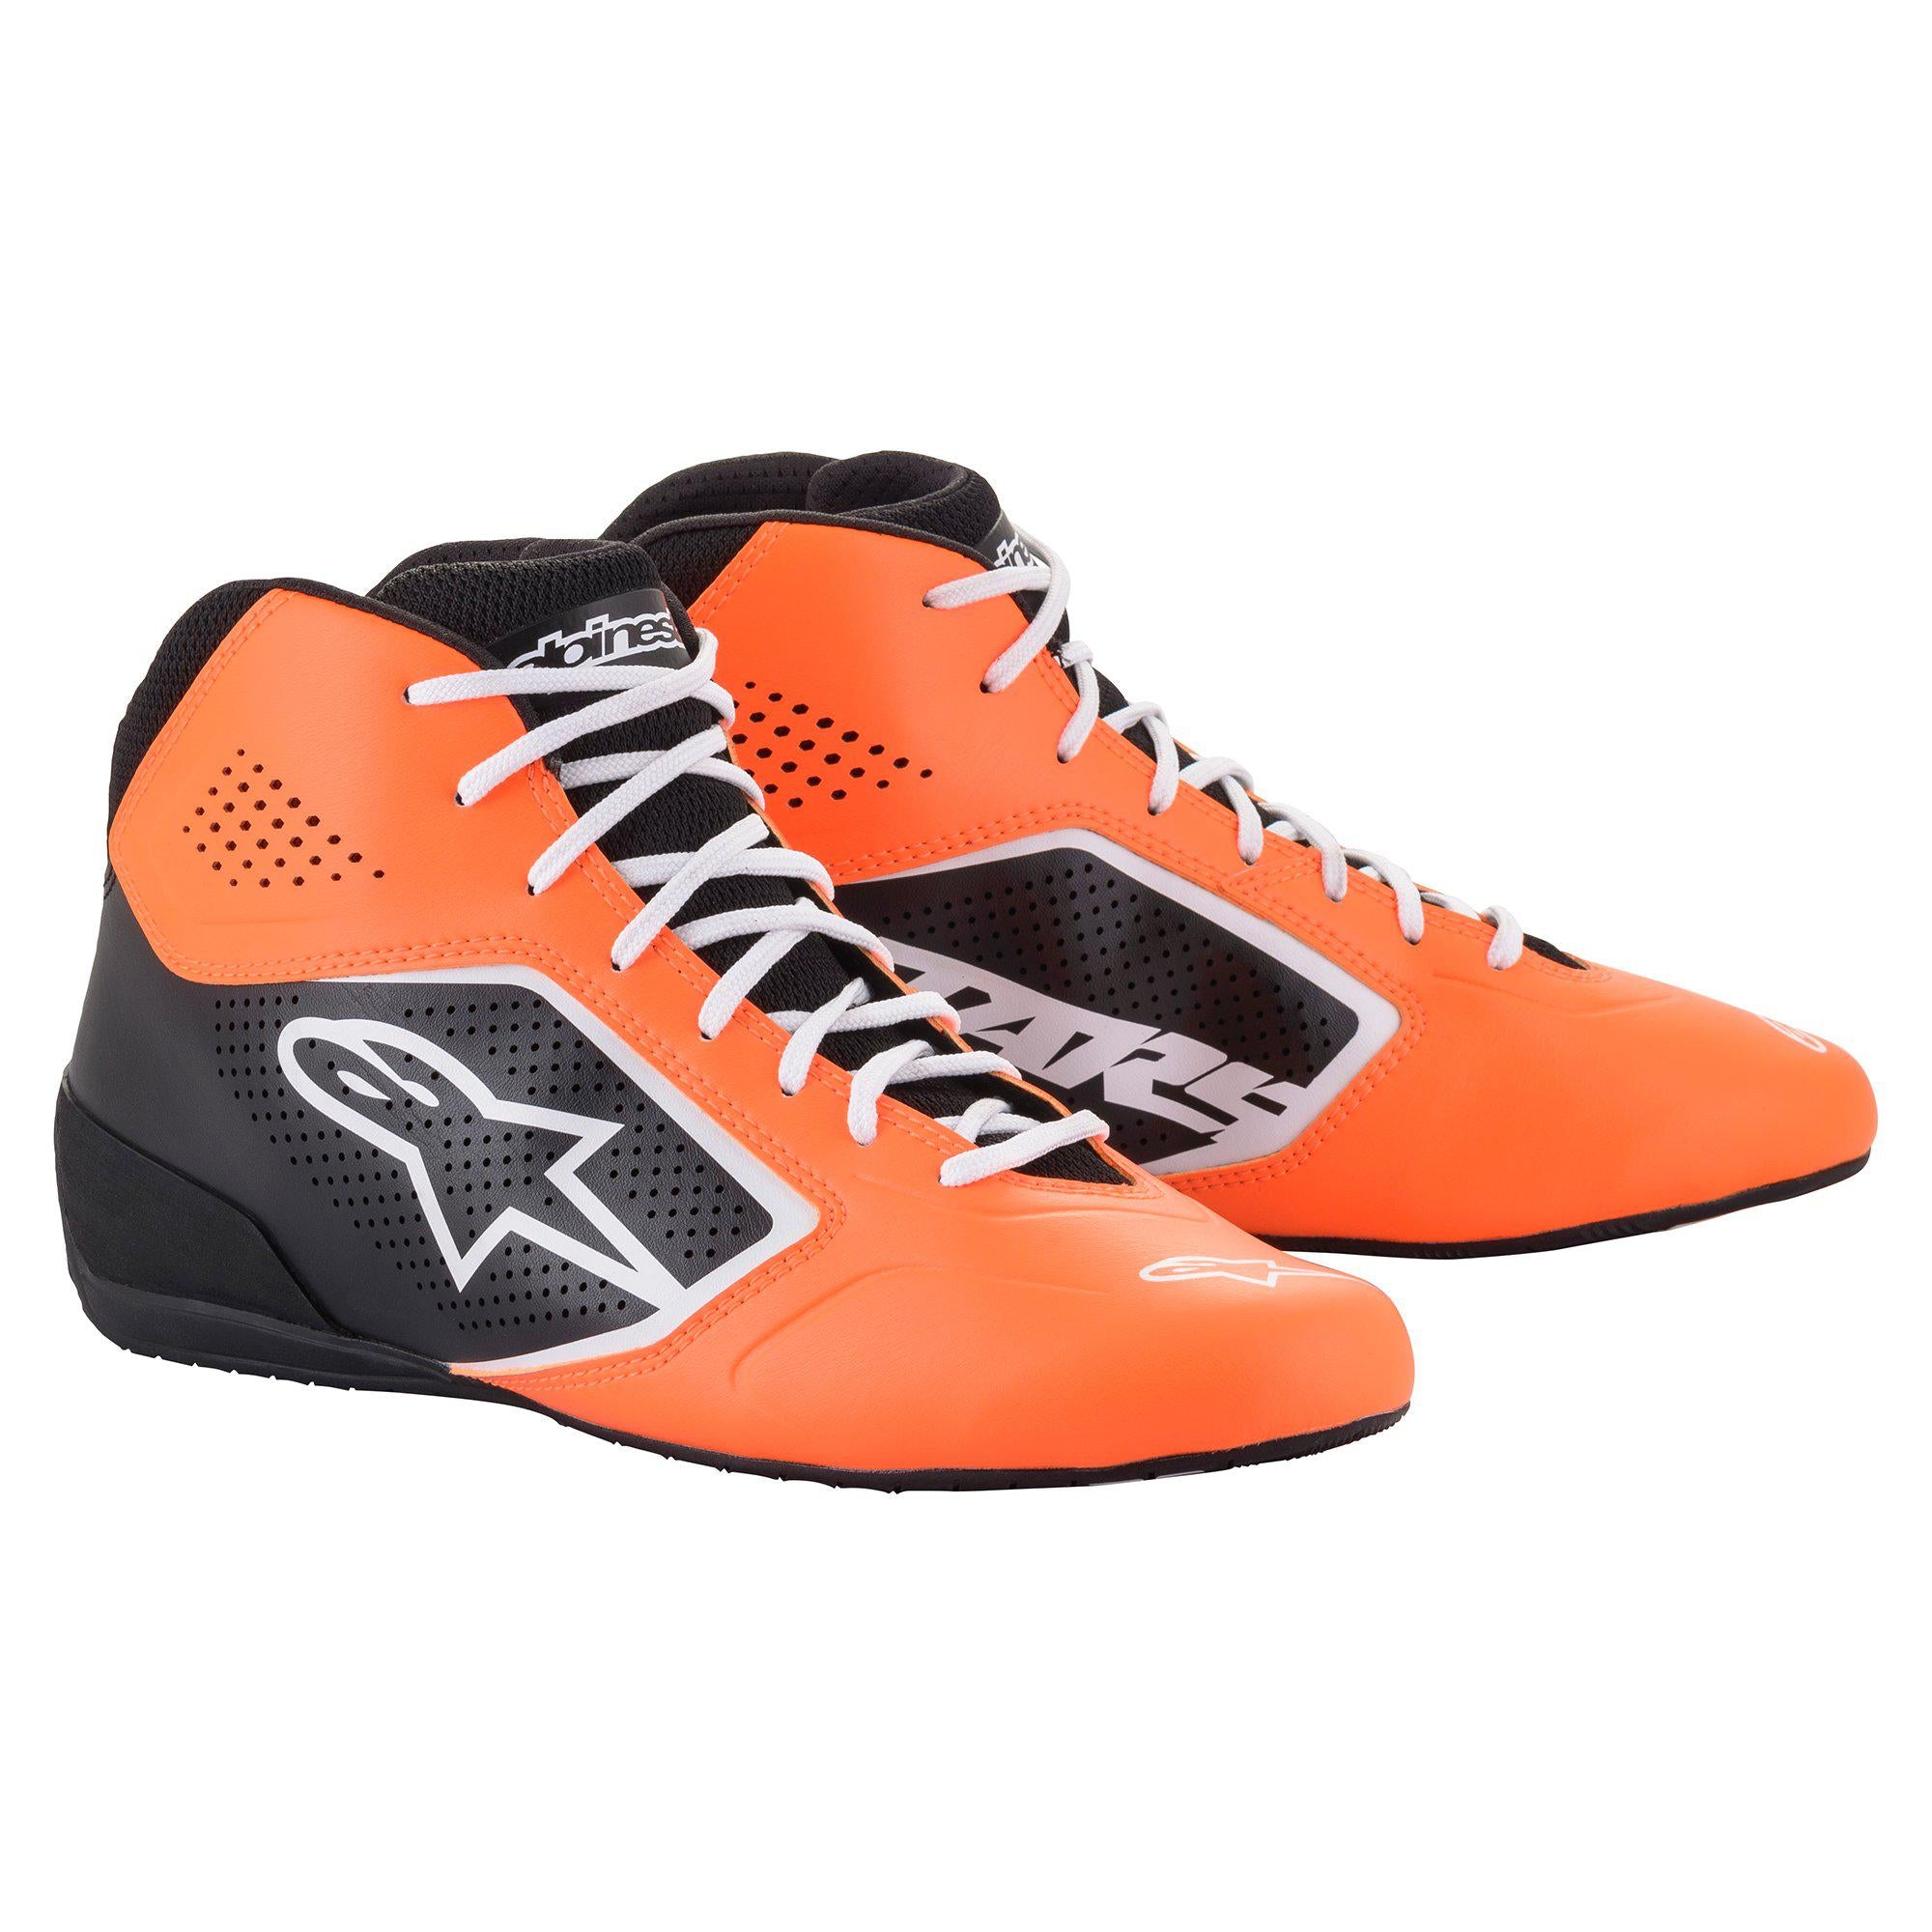 Black/Orange 8.5 Alpinestars Men's Tech-1 K Start Karting Shoe 